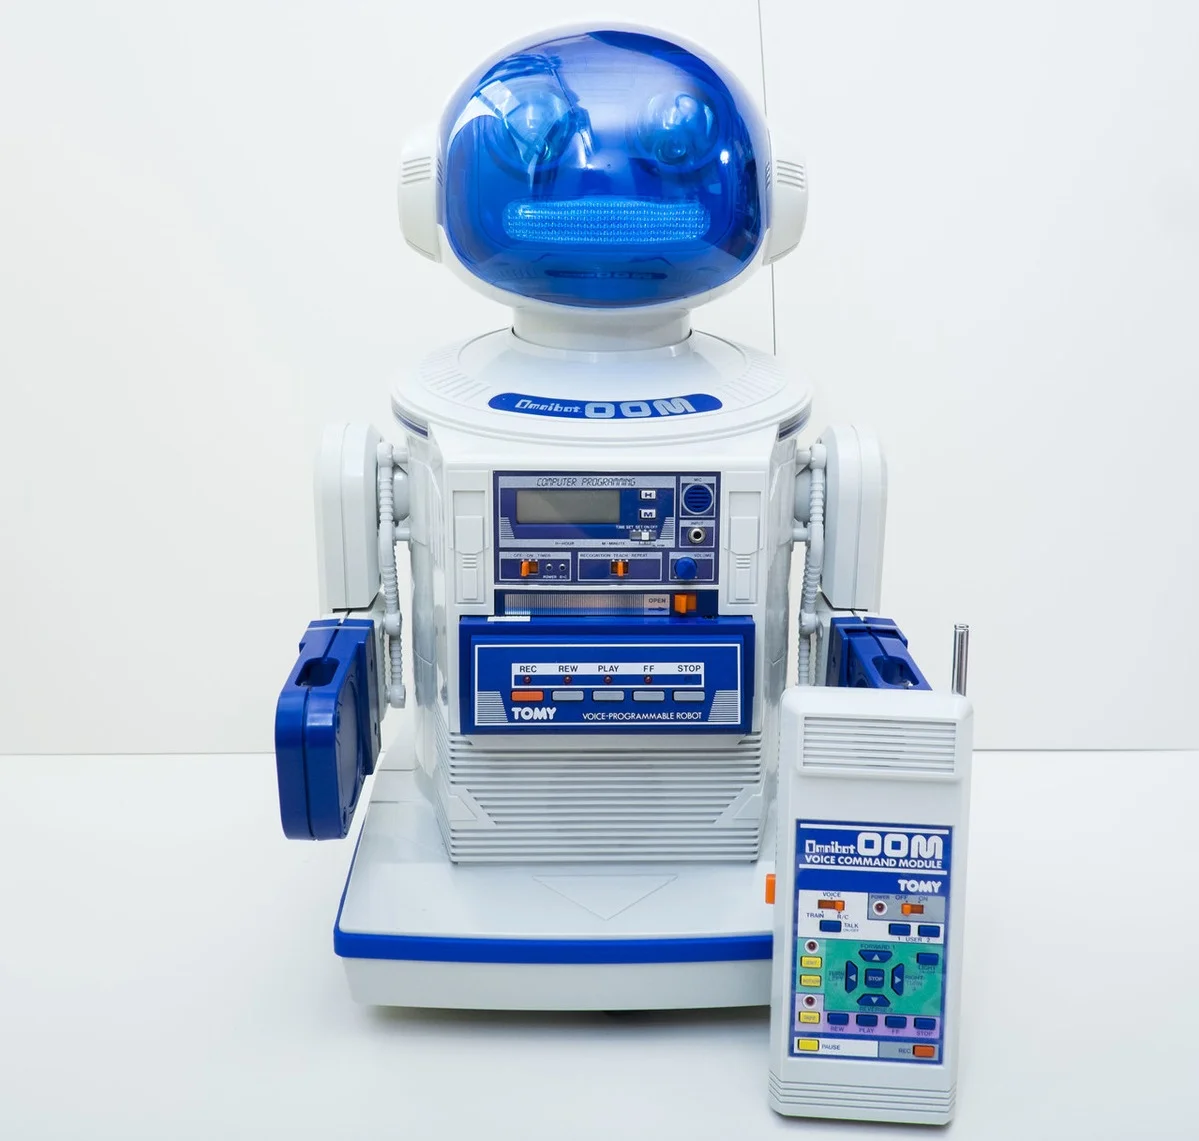 В 1980-х годах японская компания Omnibot начала производить кассетные магнитофоны с часами в виде симпатичных роботов. Устройство назвали Omnibot OOM, и кроме оригинальной внешности здесь был пульт для перемотки кассет на точное время записи.